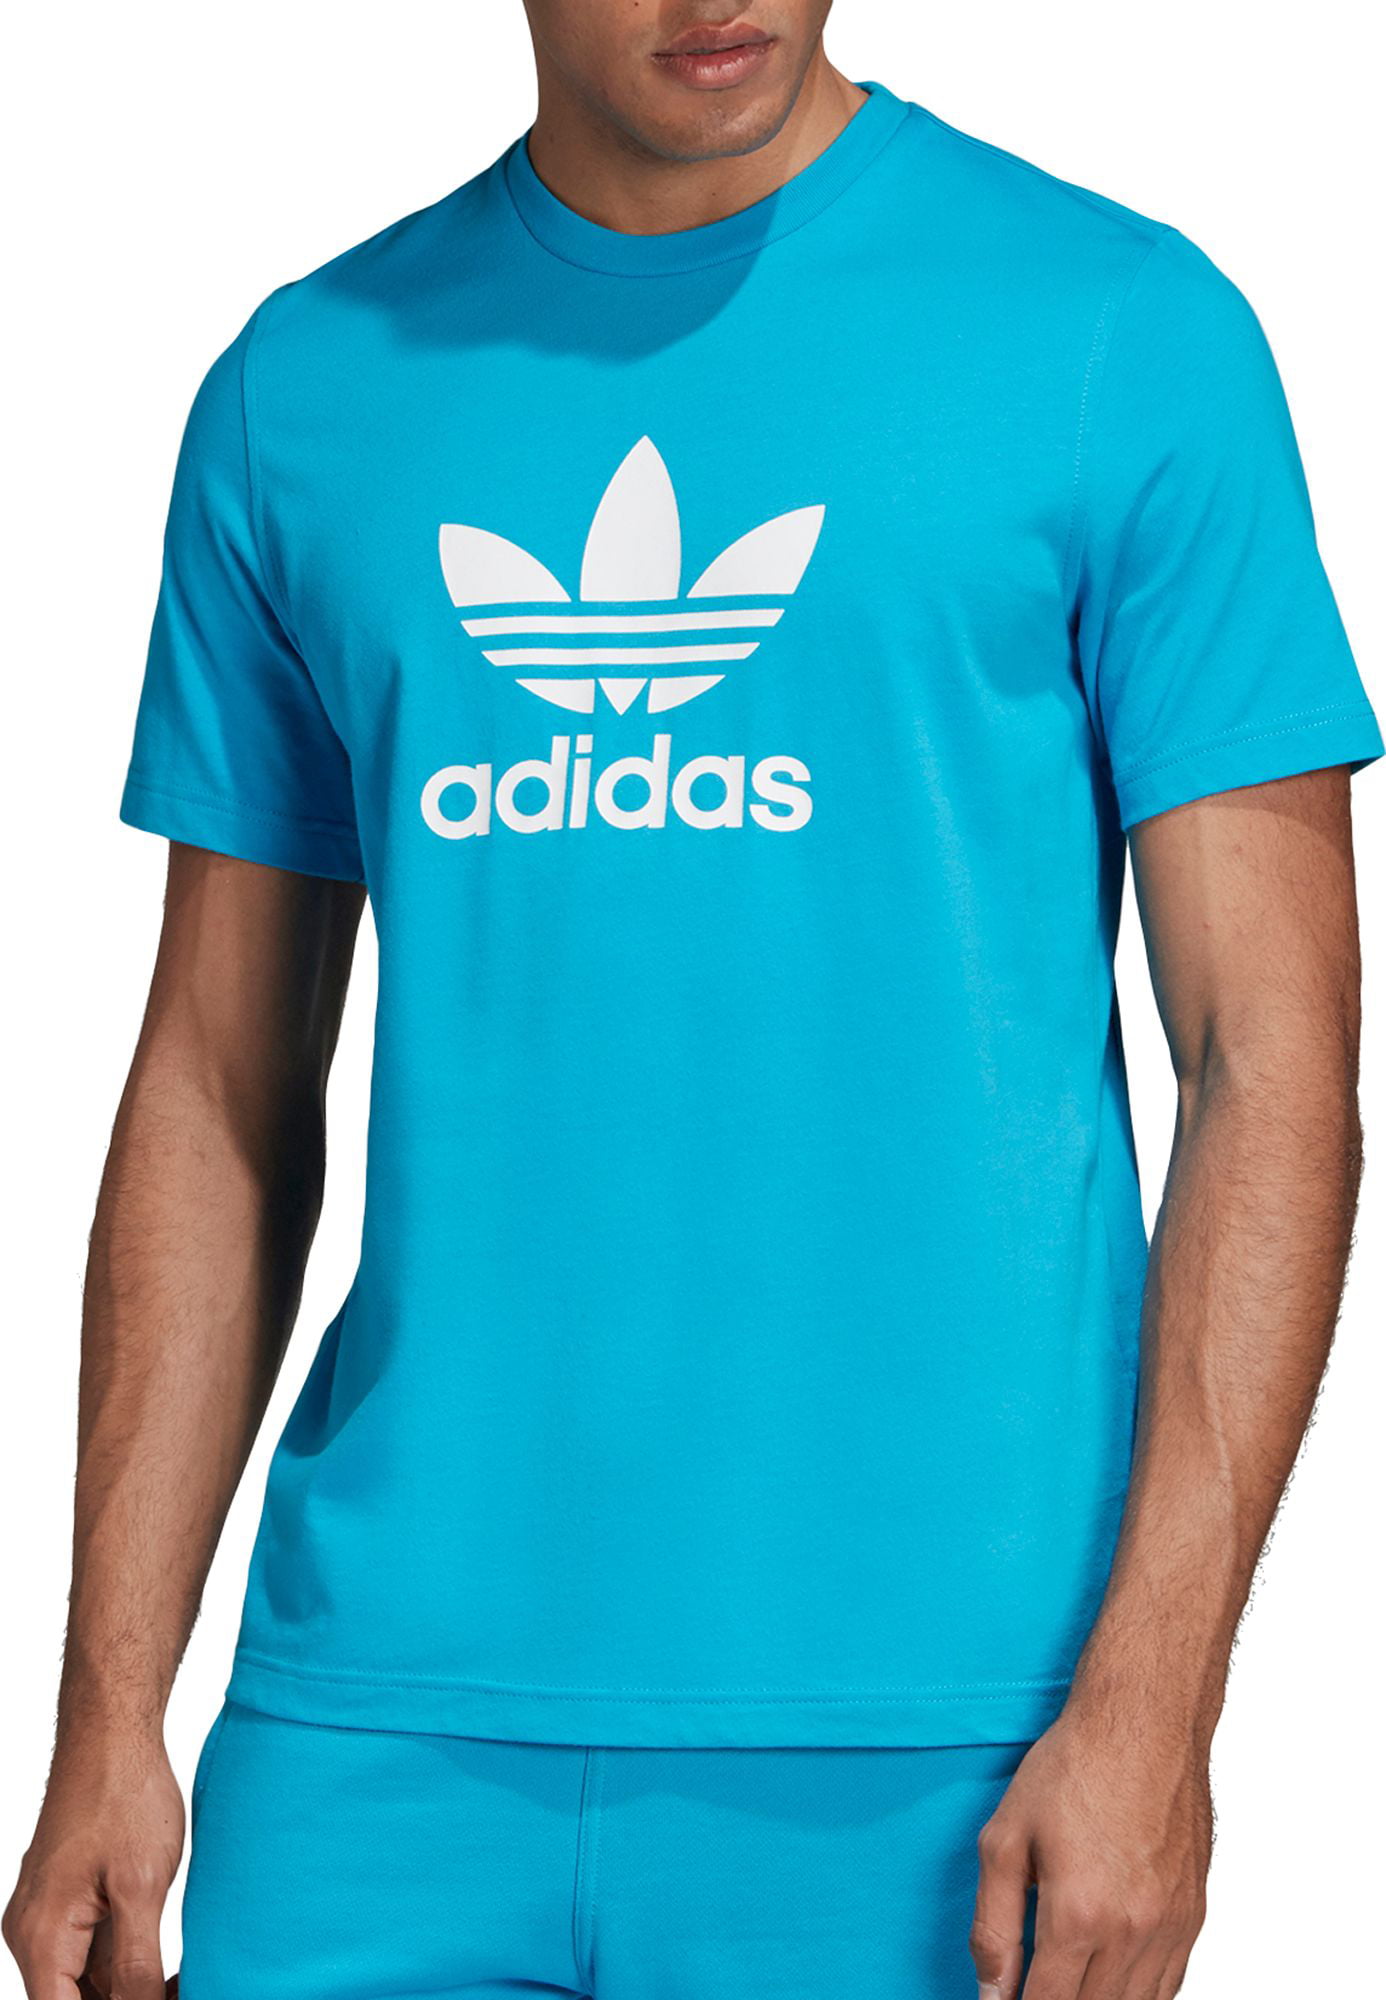 Адидас хлопок. Adidas t Shirt Trefoil. Футболка адидас оригинал голубая. Blue adidas Originals Shirt Collab. Футболка адидас мужская синяя.